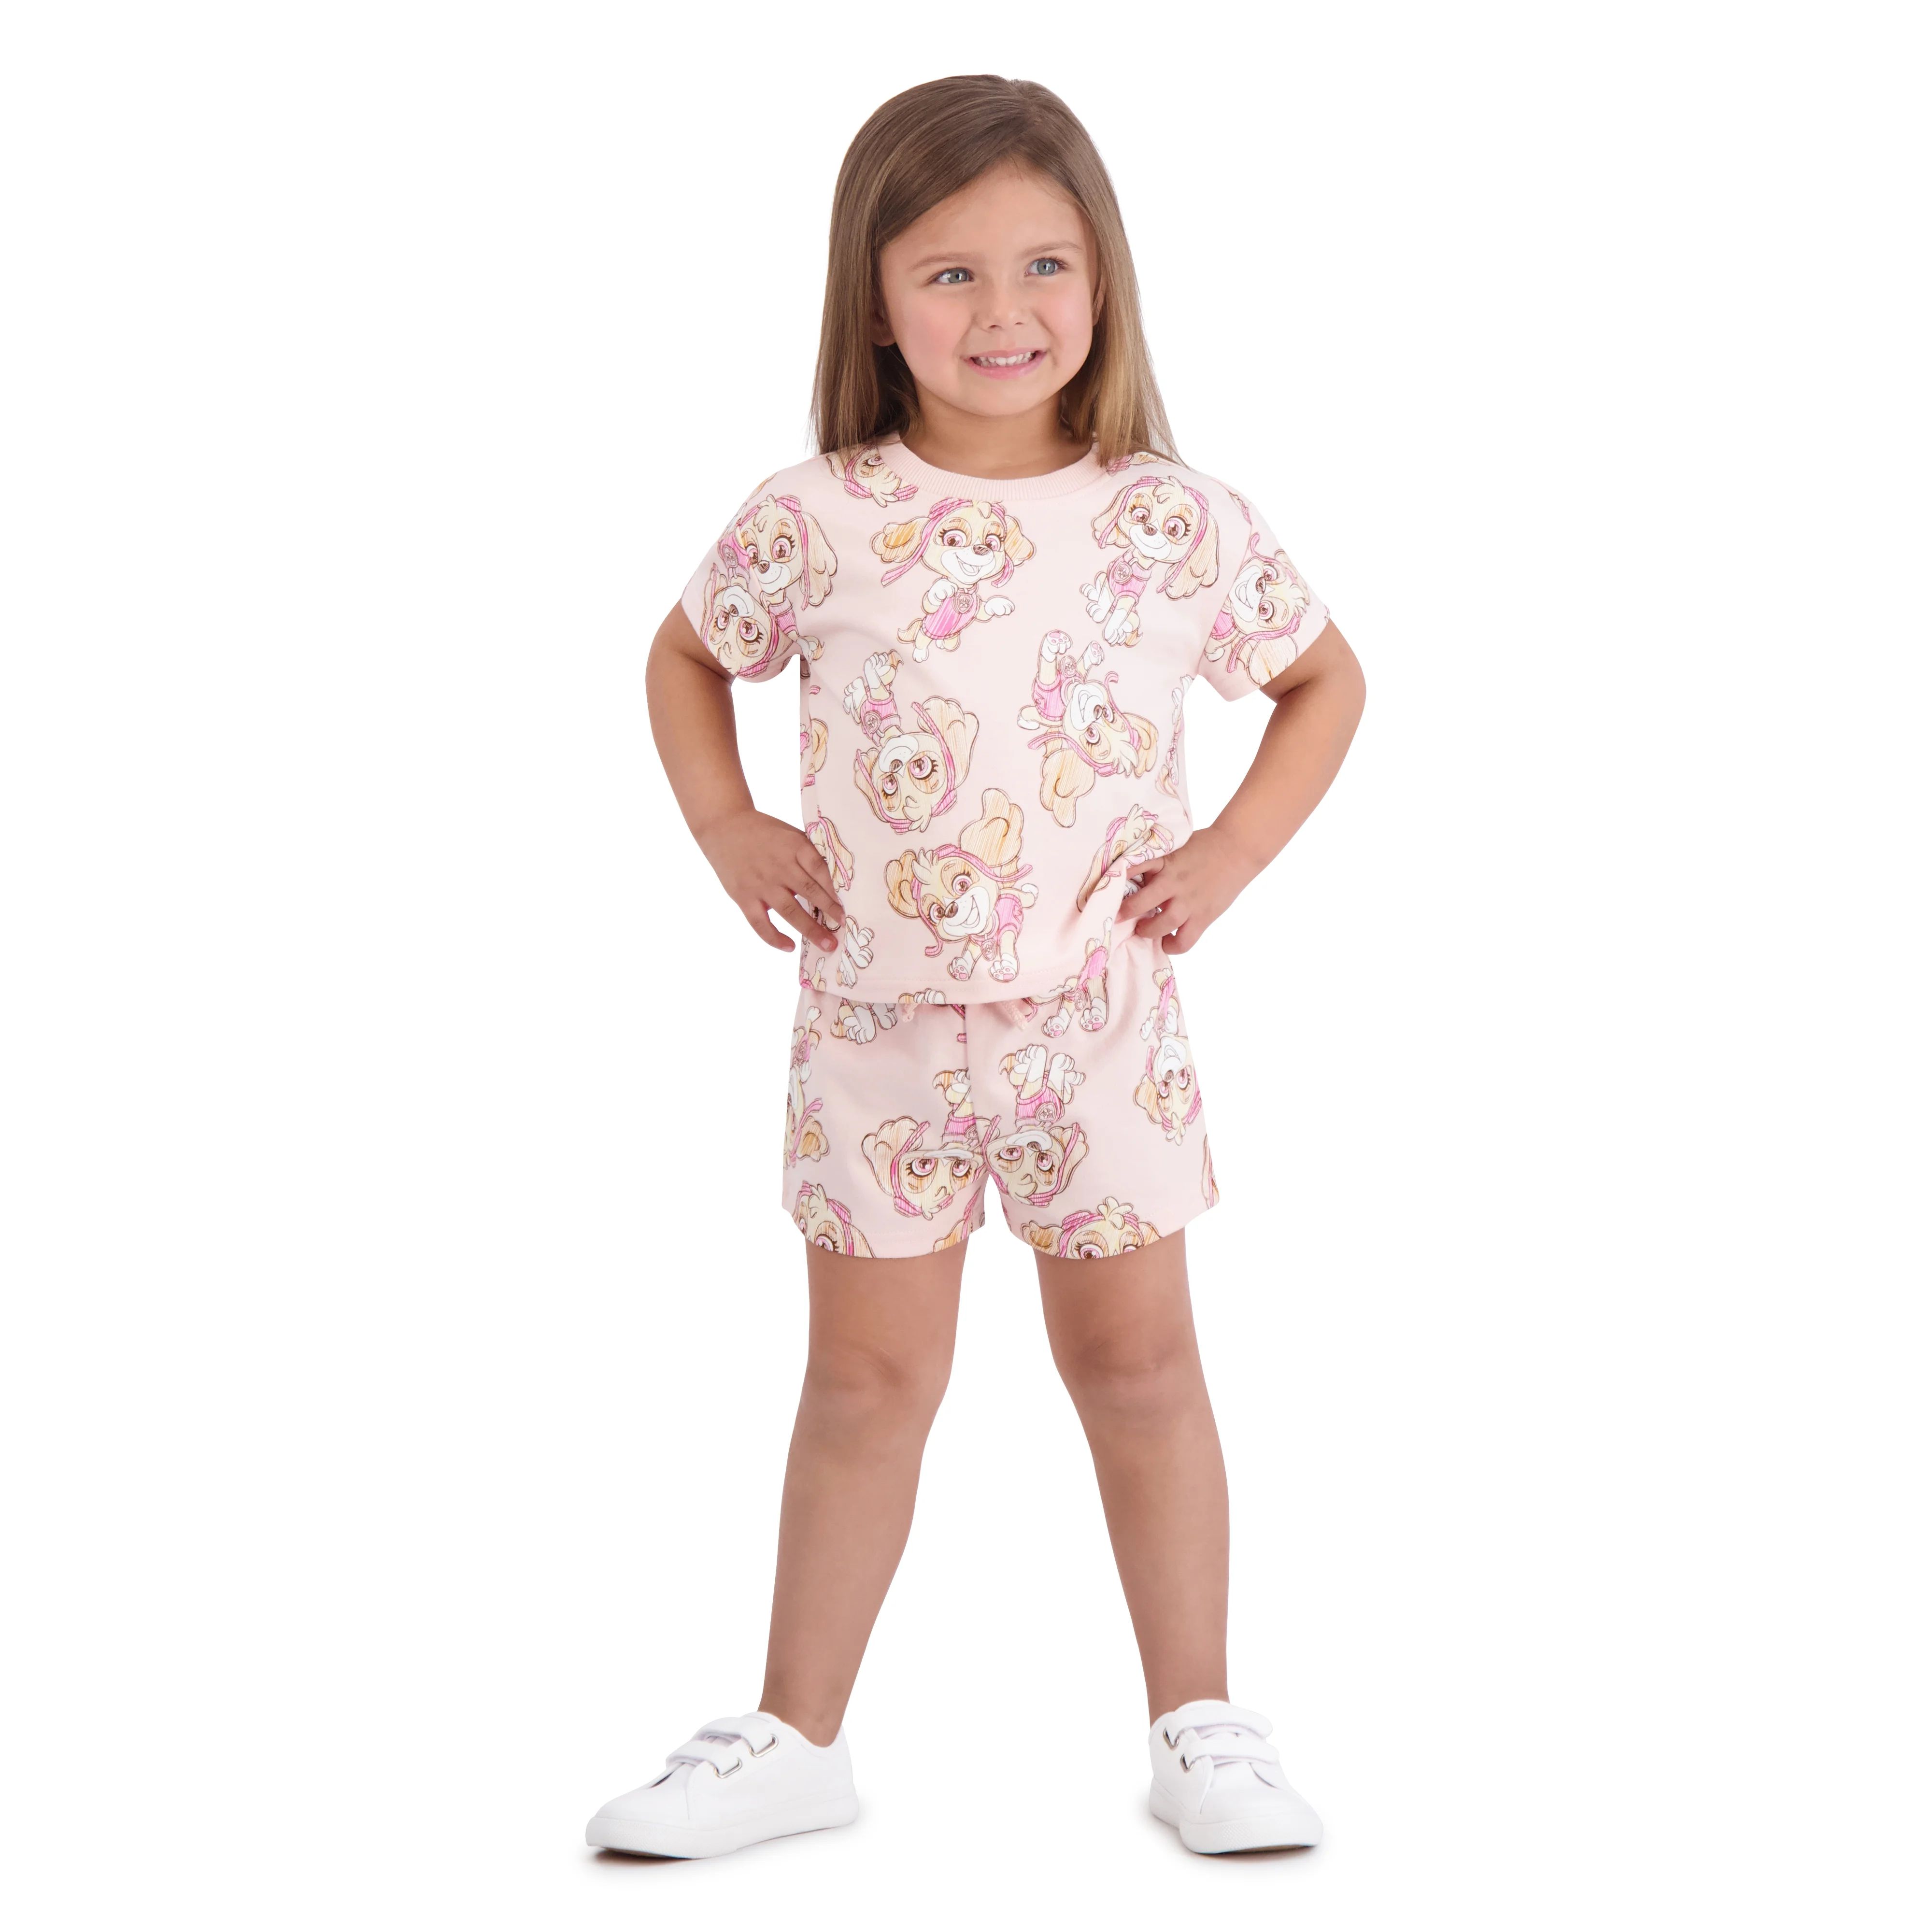 Paw Patrol Toddler Girls Short Set, Sizes 12 Months-5T | Walmart (US)